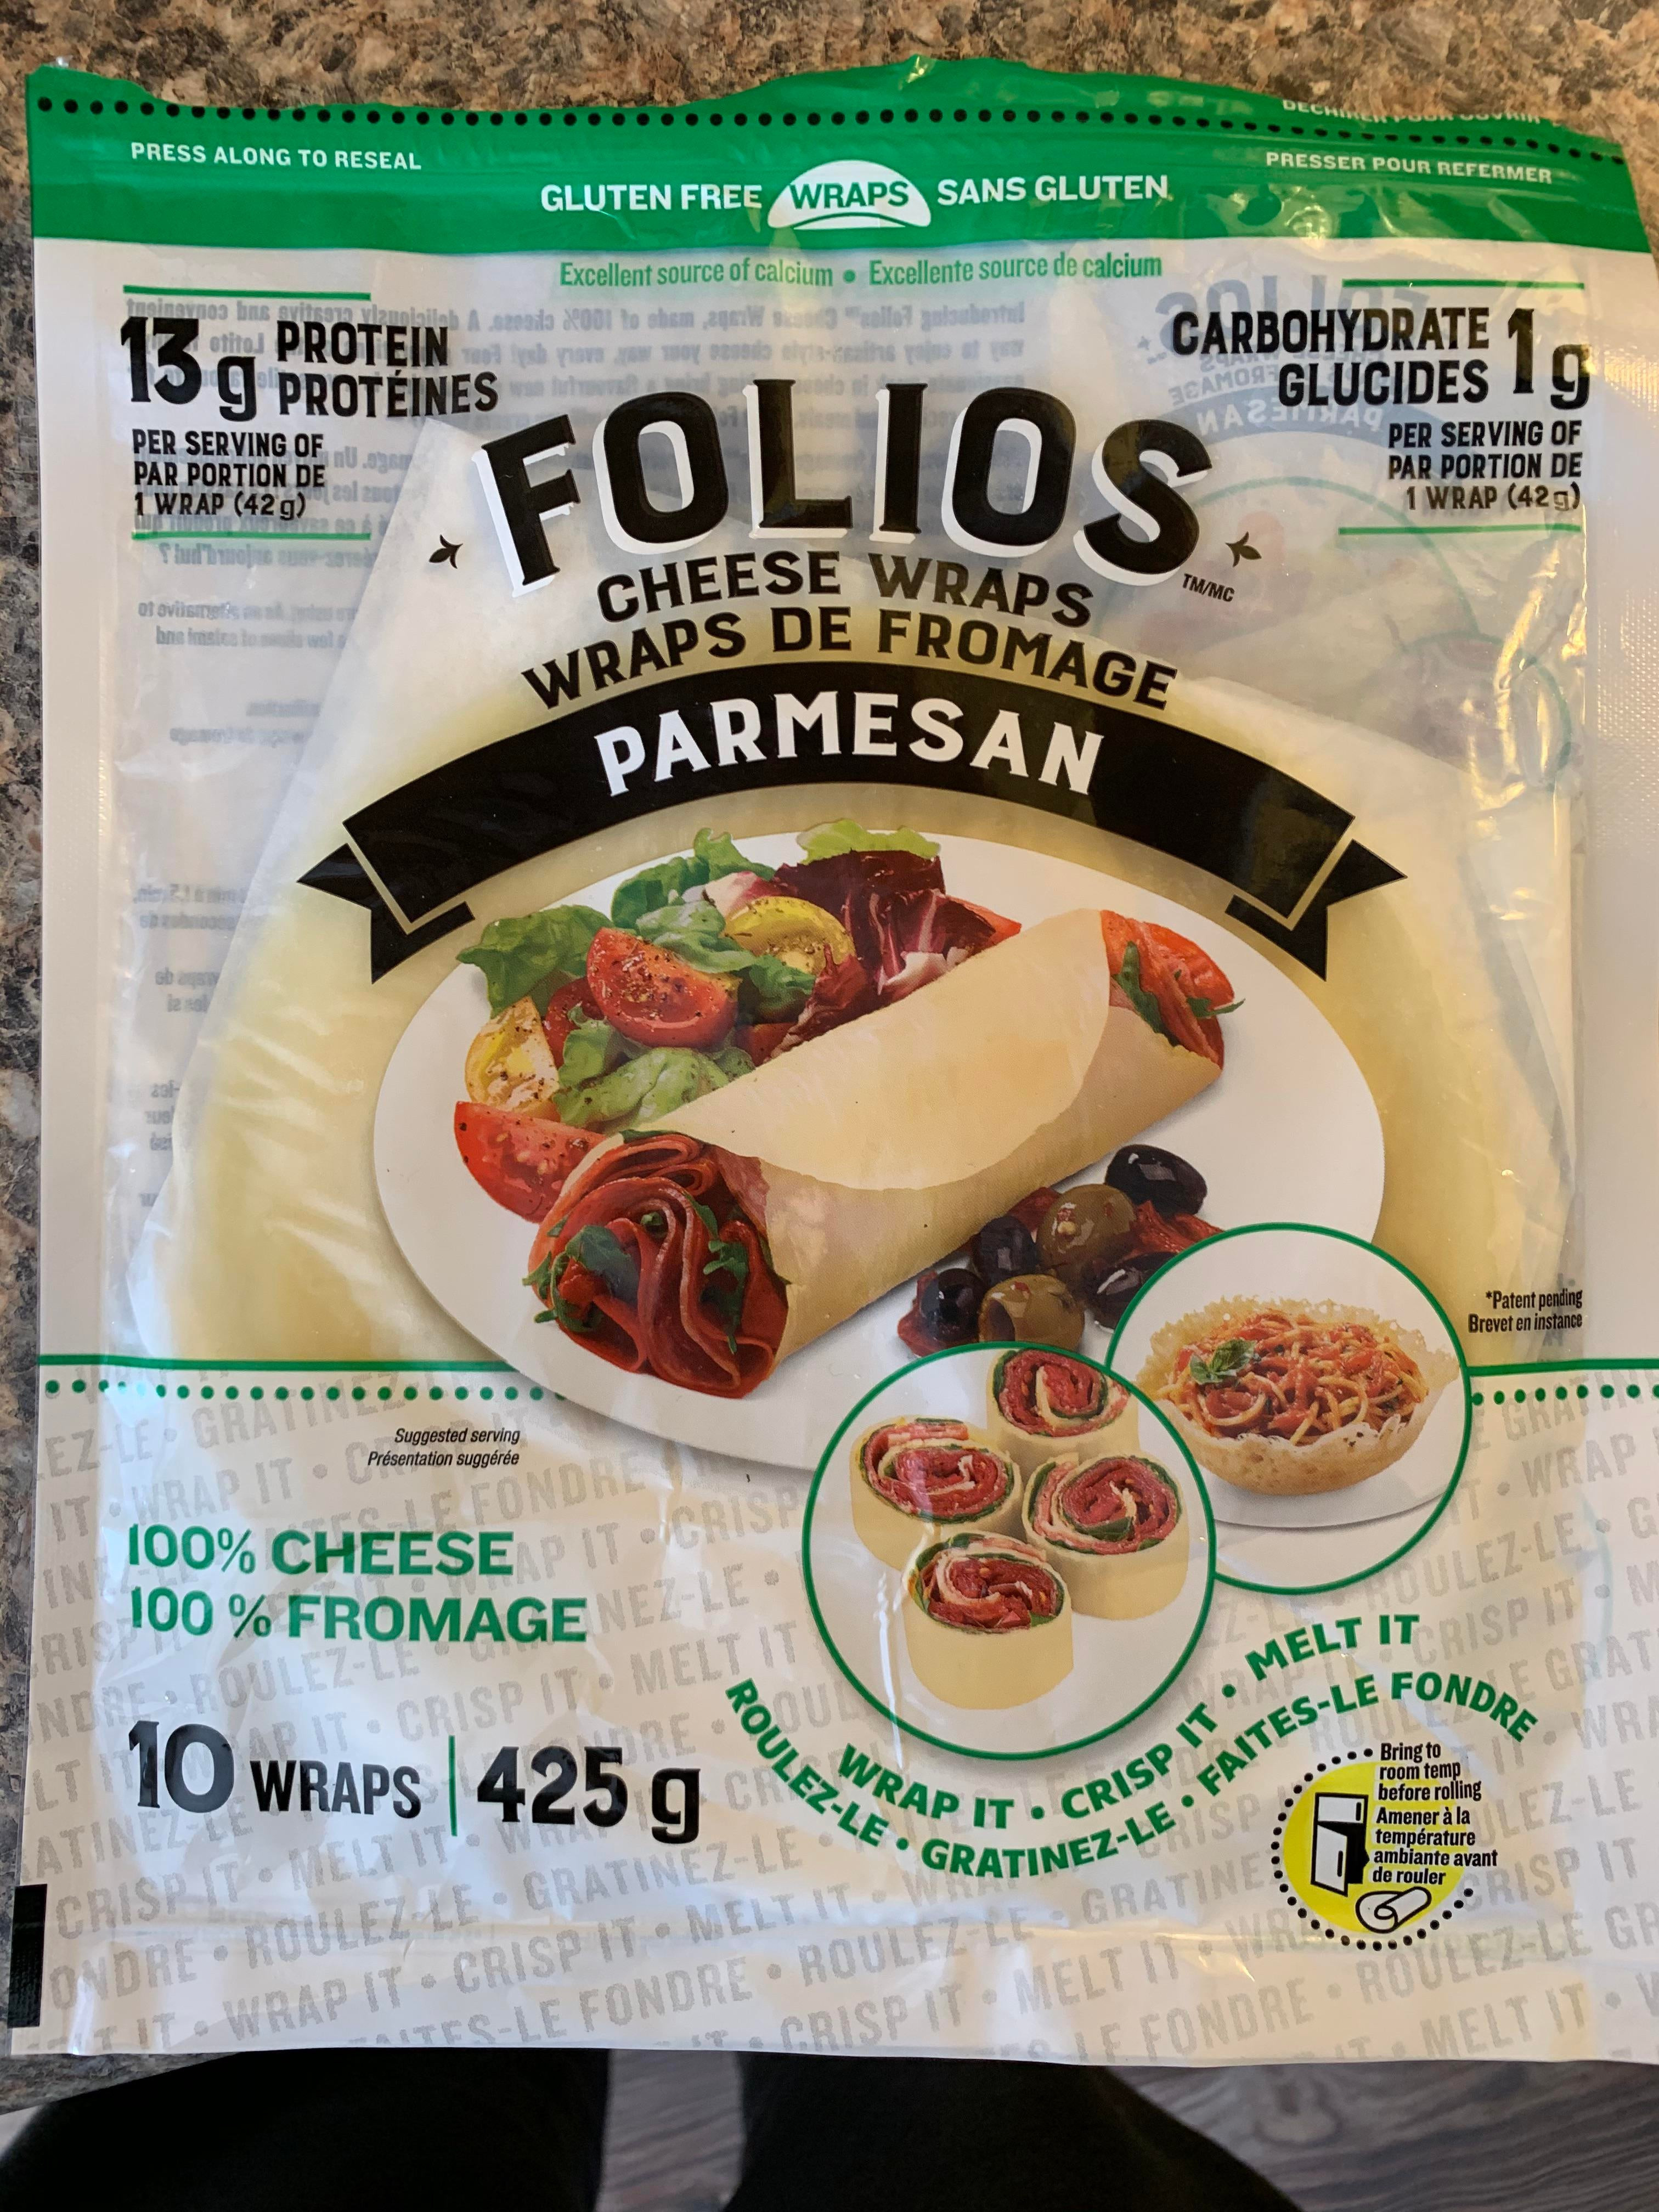 Folios parmesan cheese wraps 425g